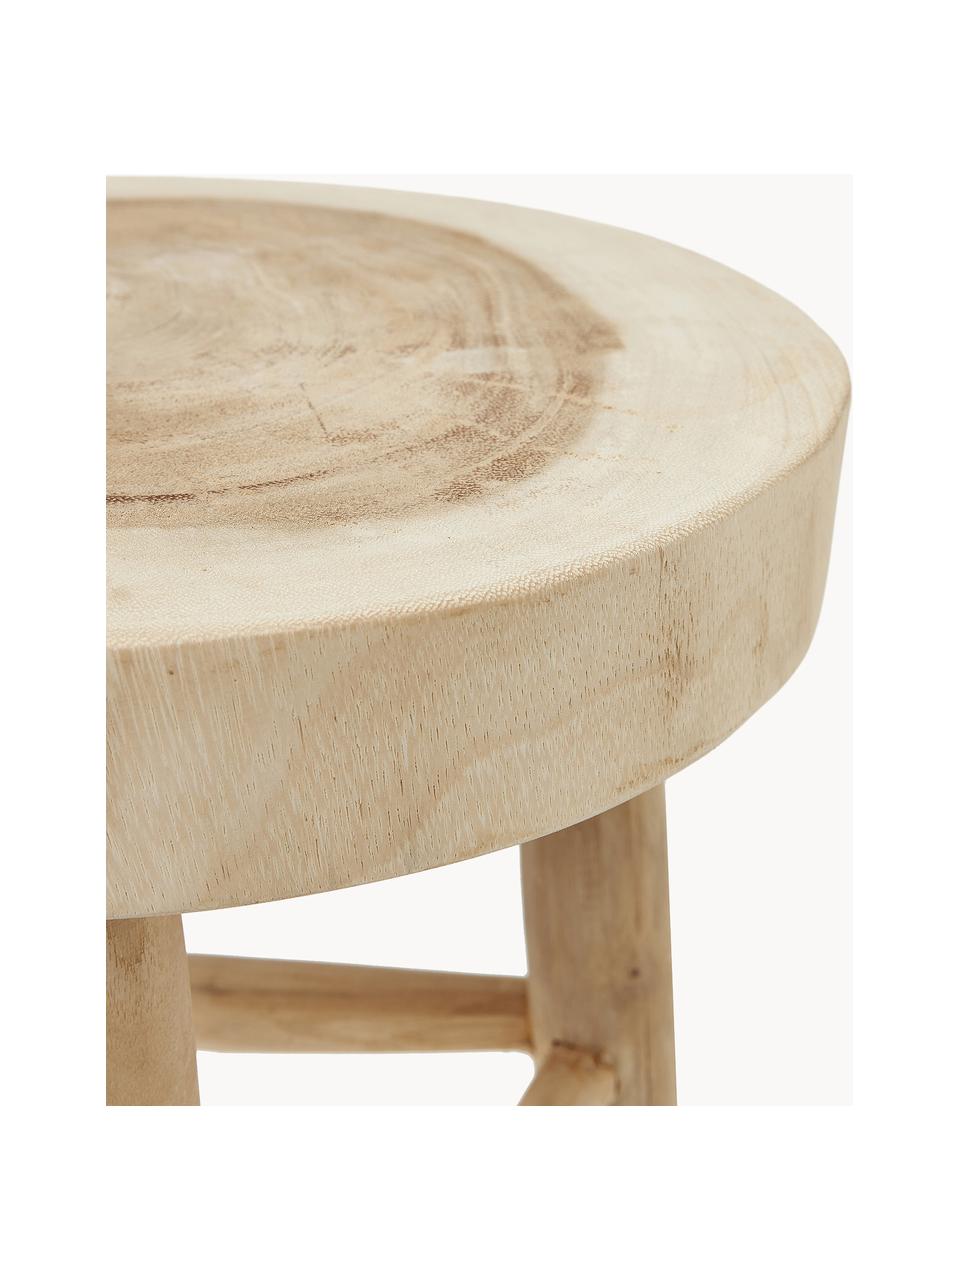 Stołek z drewna mungur Beachside, Naturalne drewno mungur z recyklingu

Ten produkt jest wykonany z drewna pochodzącego ze zrównoważonych upraw, które posiada certyfikat FSC®., Drewno mungur, Ø 35 x W 50 cm